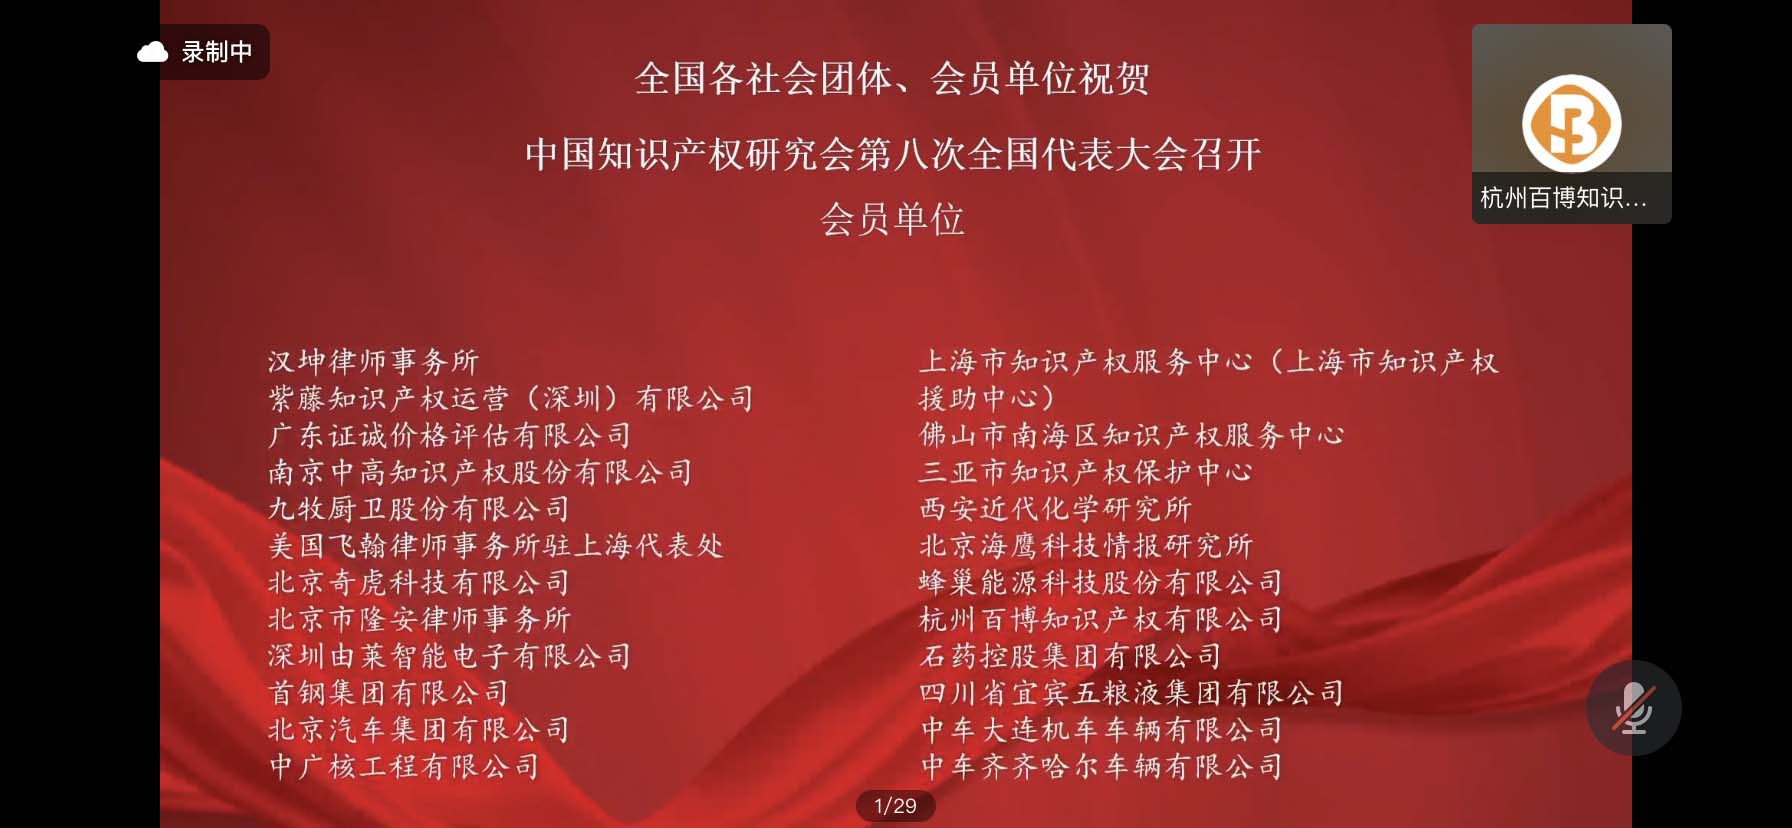 中国知识产权研究会第八次全国代表大会 - 会员名单.jpg